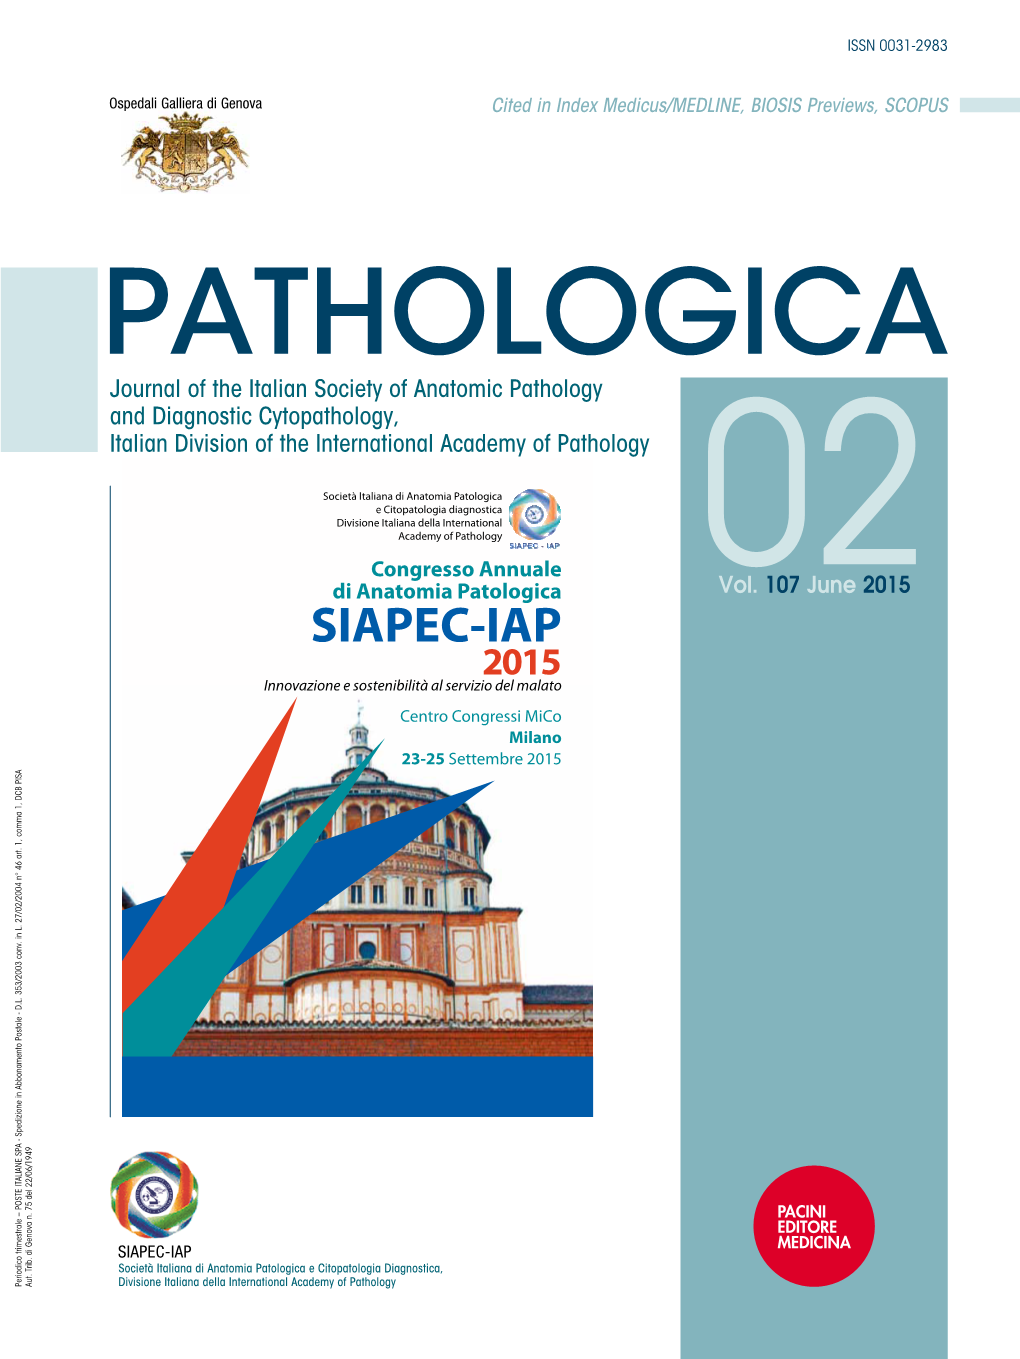 SIAPEC-IAP 2015 Congresso Annuale Il Team Roche Ti Aspetta Allo Stand! Di Anatomia Patologica 02Vol